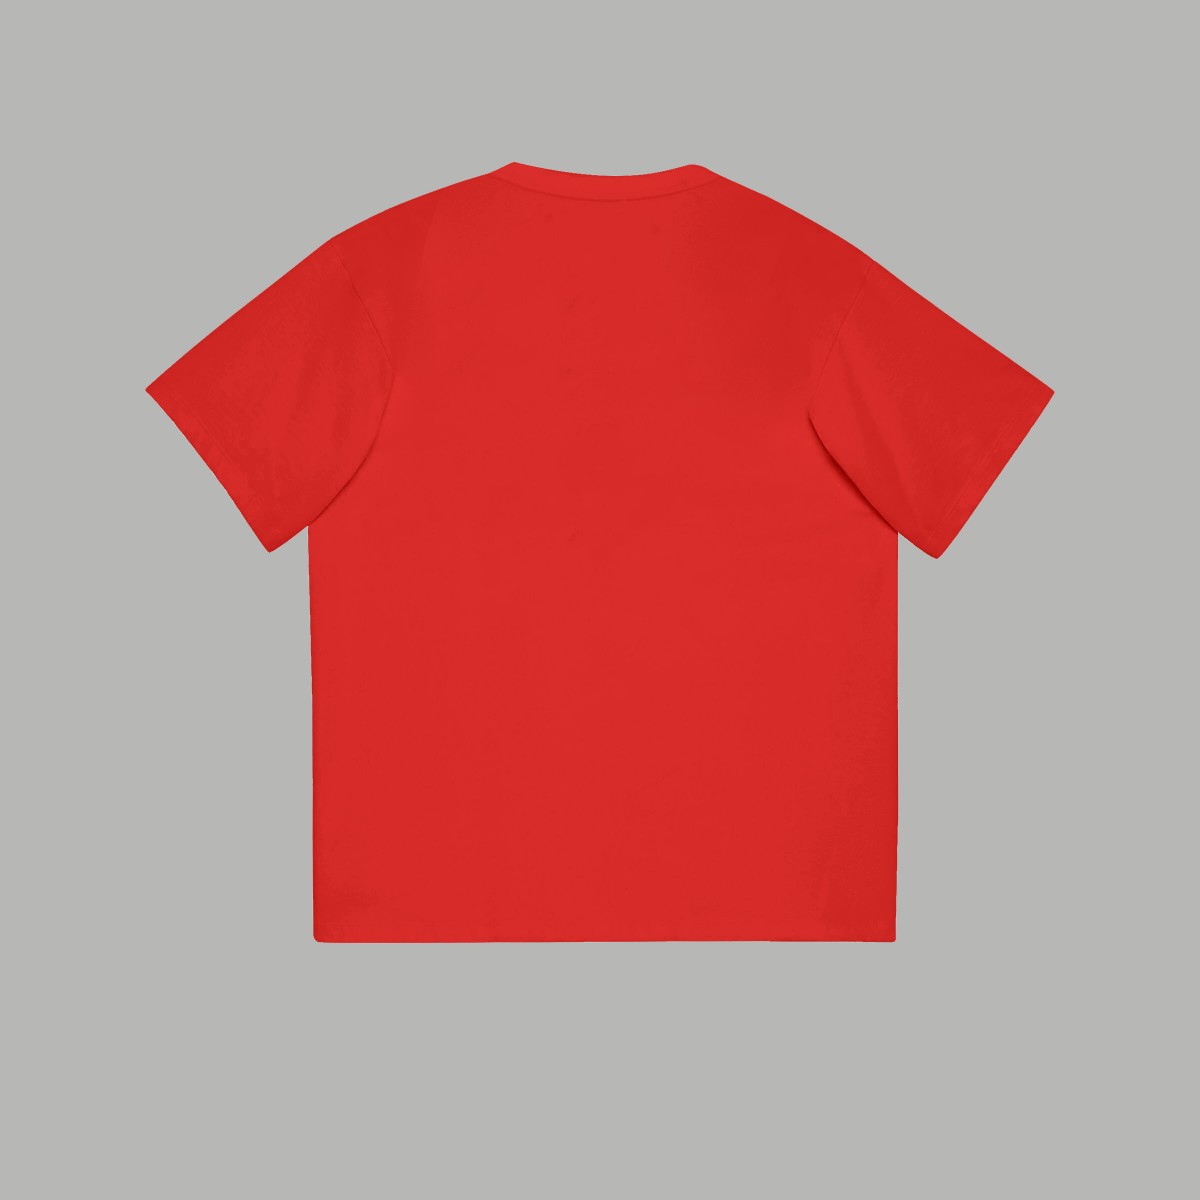 burberry メンズ t シャツ激安通販 純綿 シンプル 短袖シャツ 夏 ゆったり 龍プリント 3色可選 レッド_3